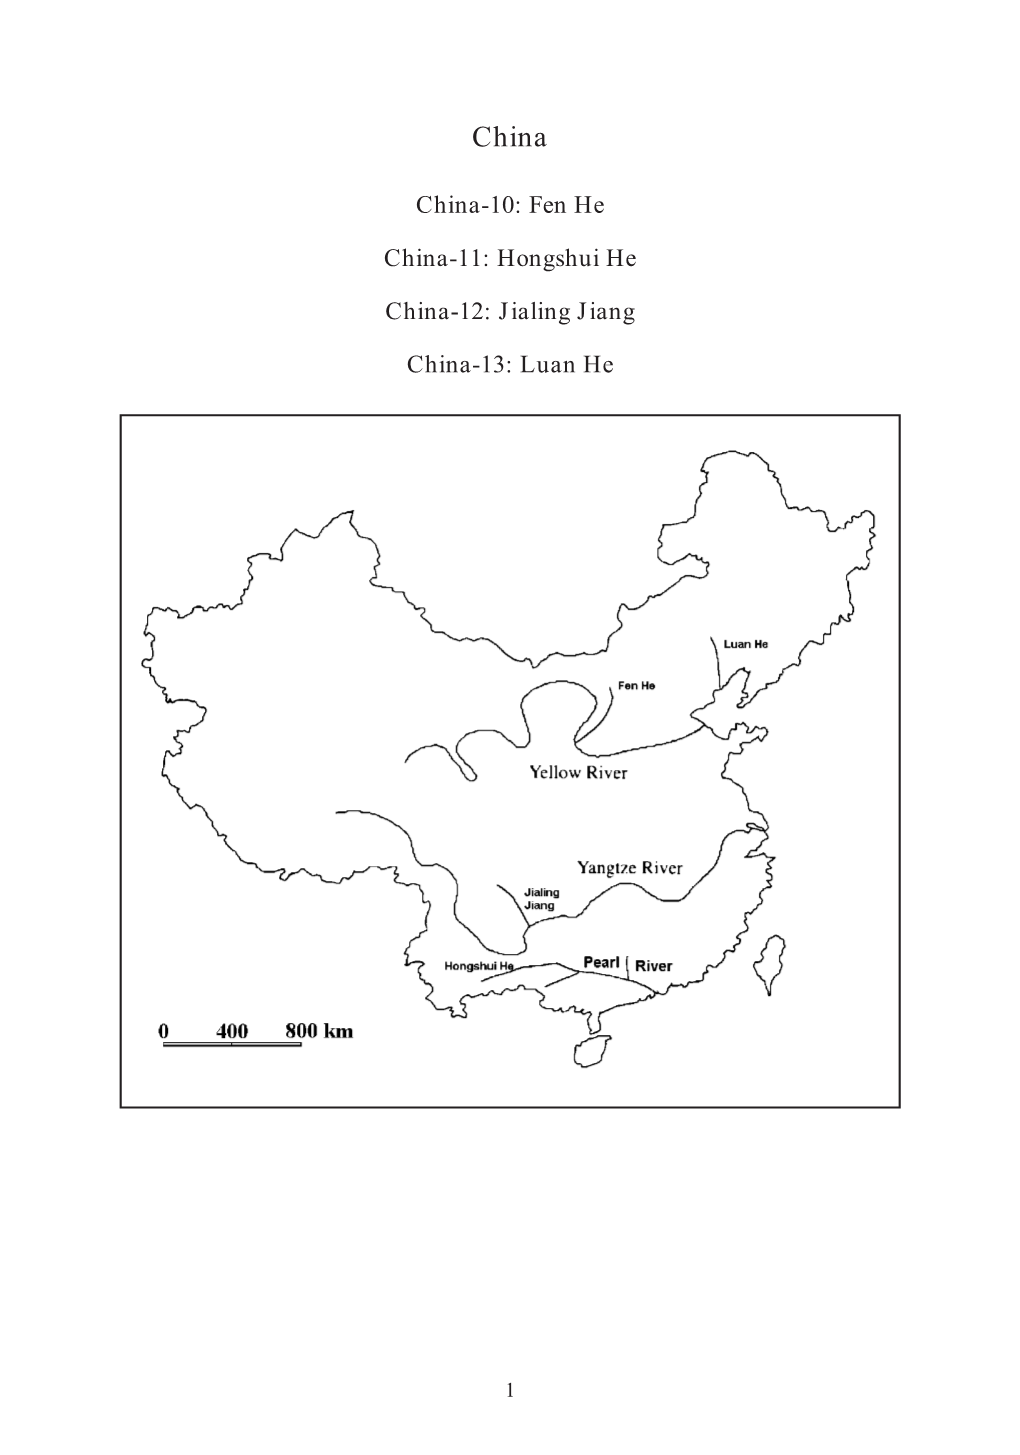 Hongshui He China-12: Jialing Jiang China-13: Luan He